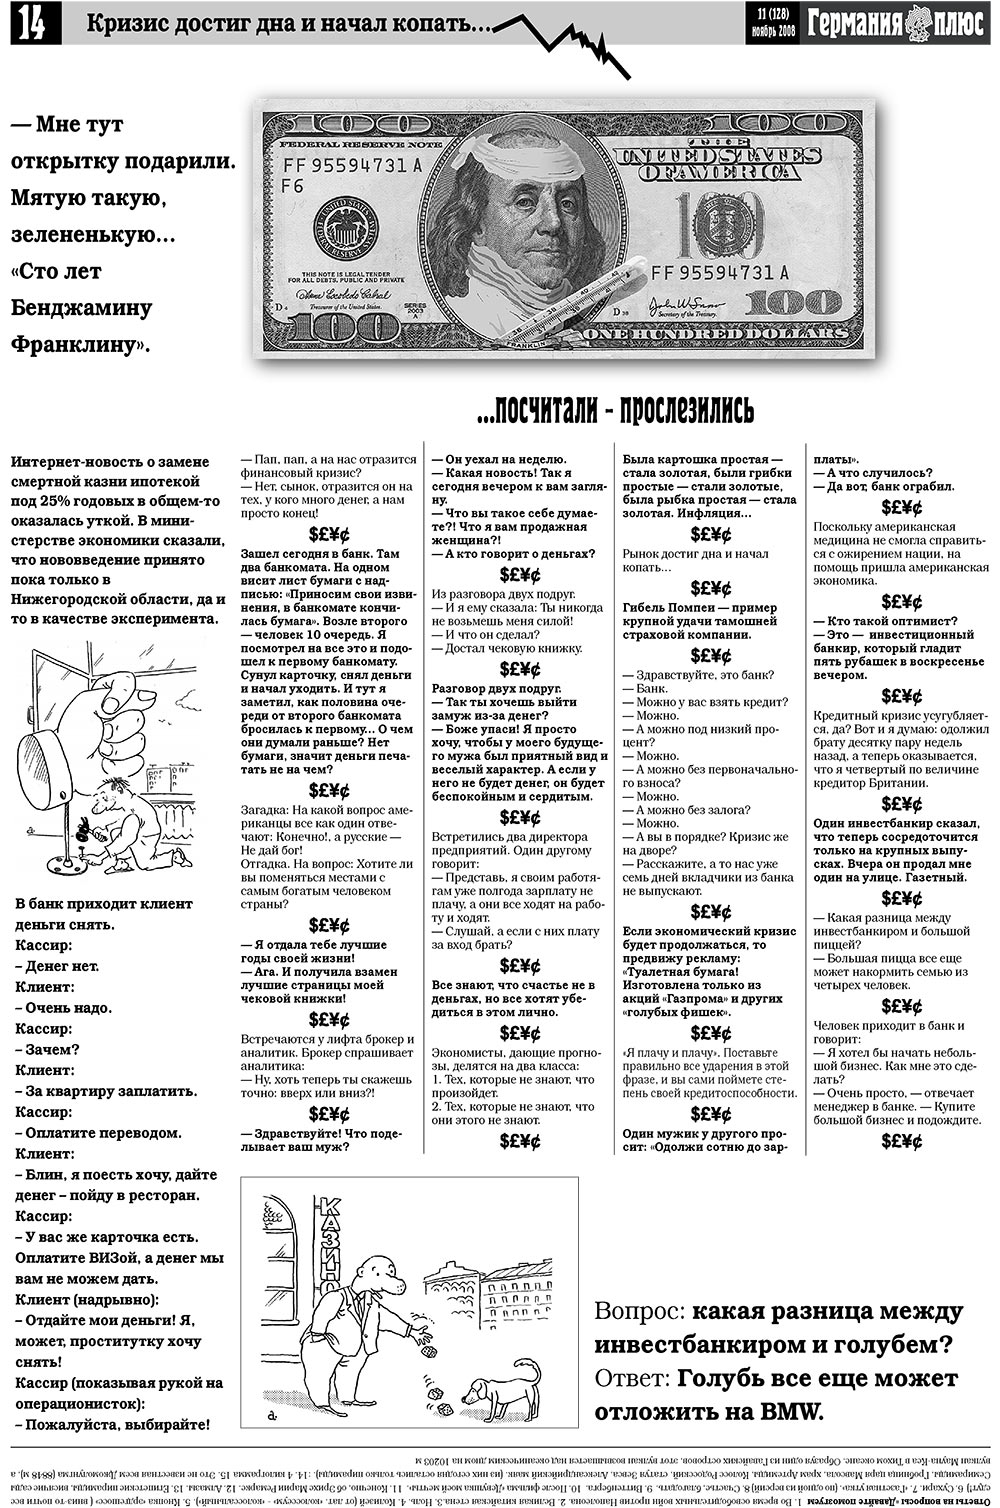 Германия плюс, газета. 2008 №11 стр.16